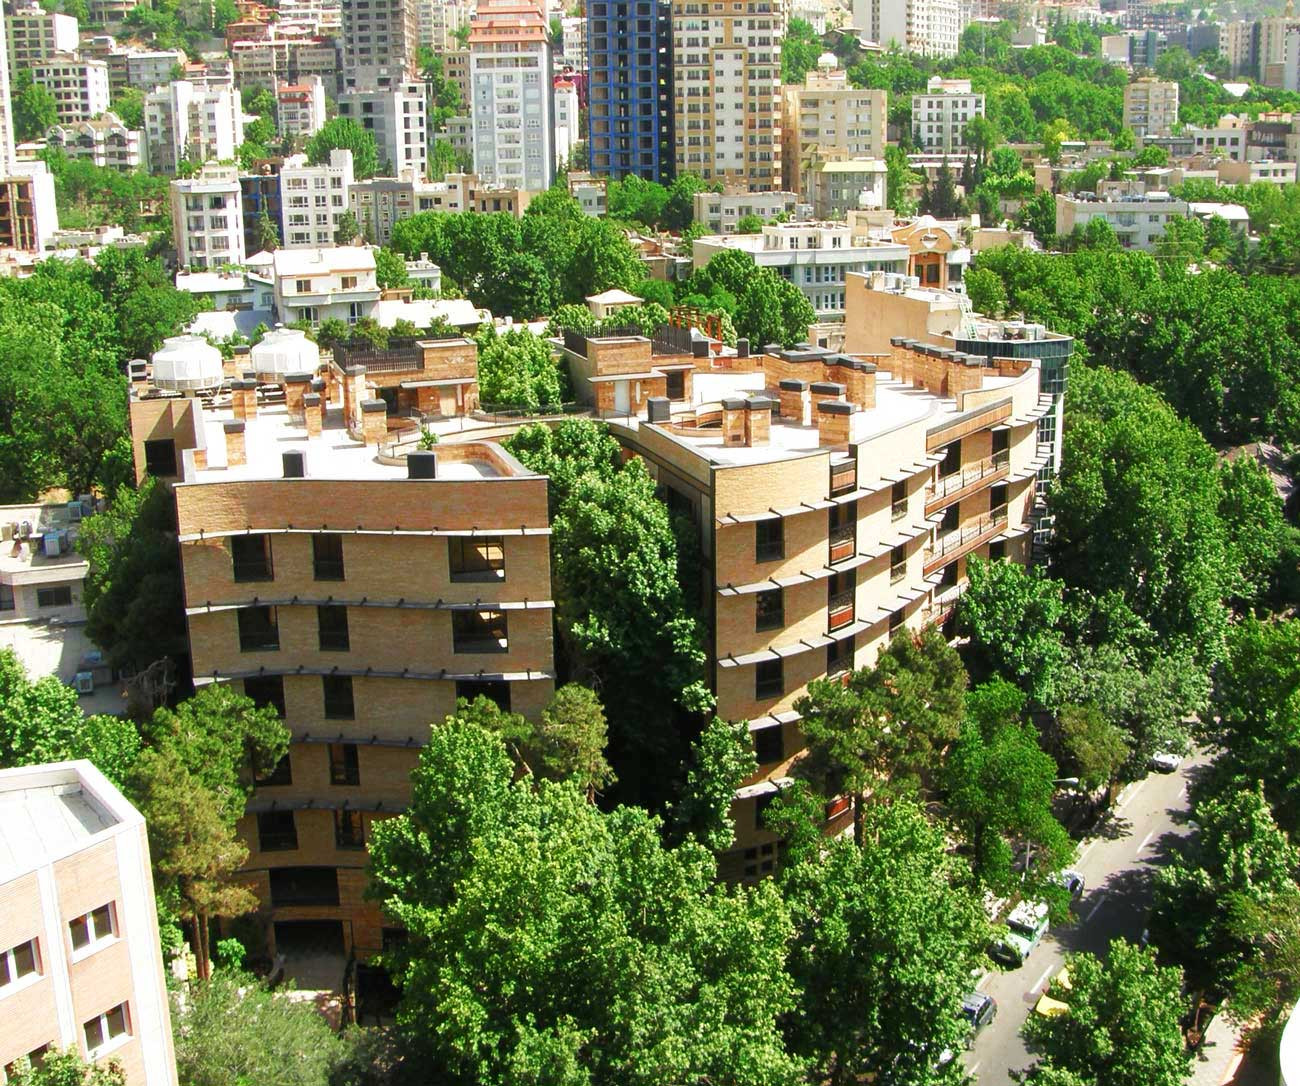 خرید و فروش آپارتمان شمال تهران به ویژه بلوار اندرزگو چگونه است؟